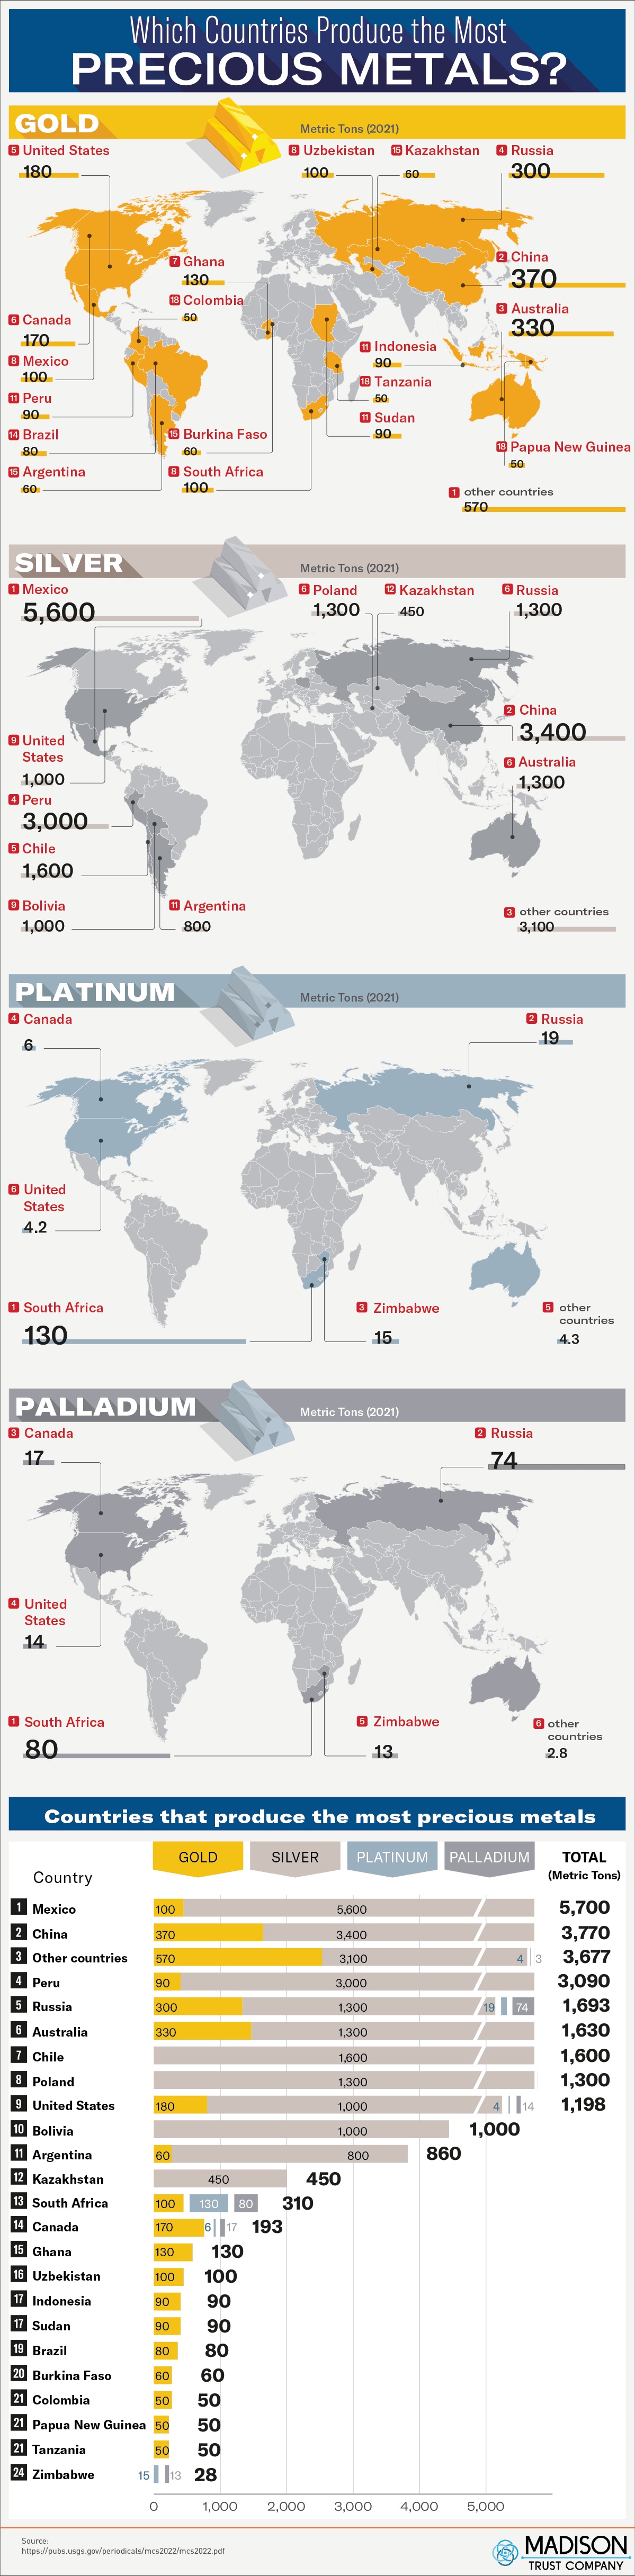 Kraje produkujące najwięcej metali szlachetnych - złota, srebra, platyny, palladu